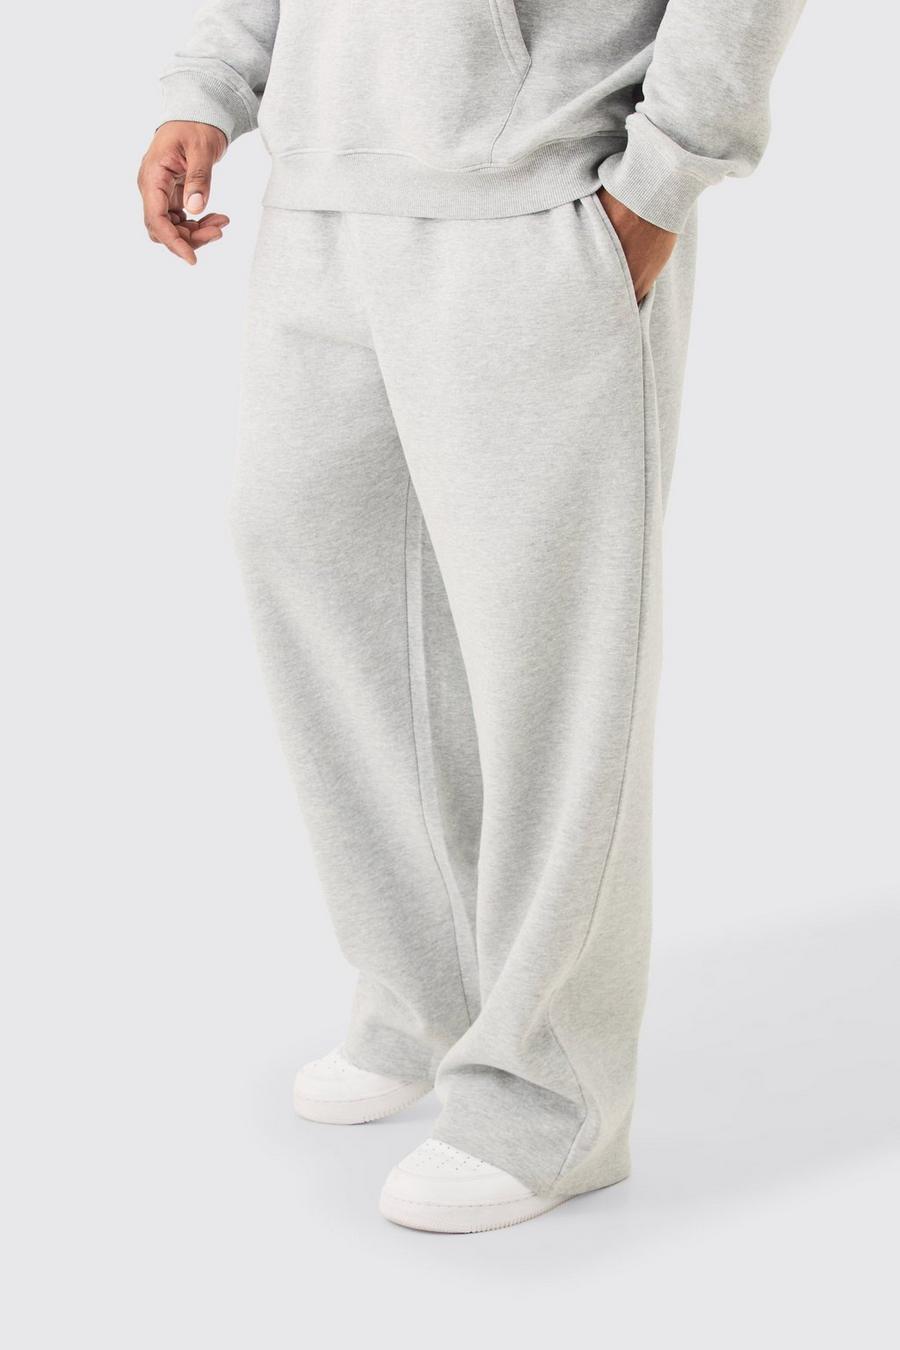 Pantalón deportivo Plus básico holgado gris jaspeado, Grey marl image number 1